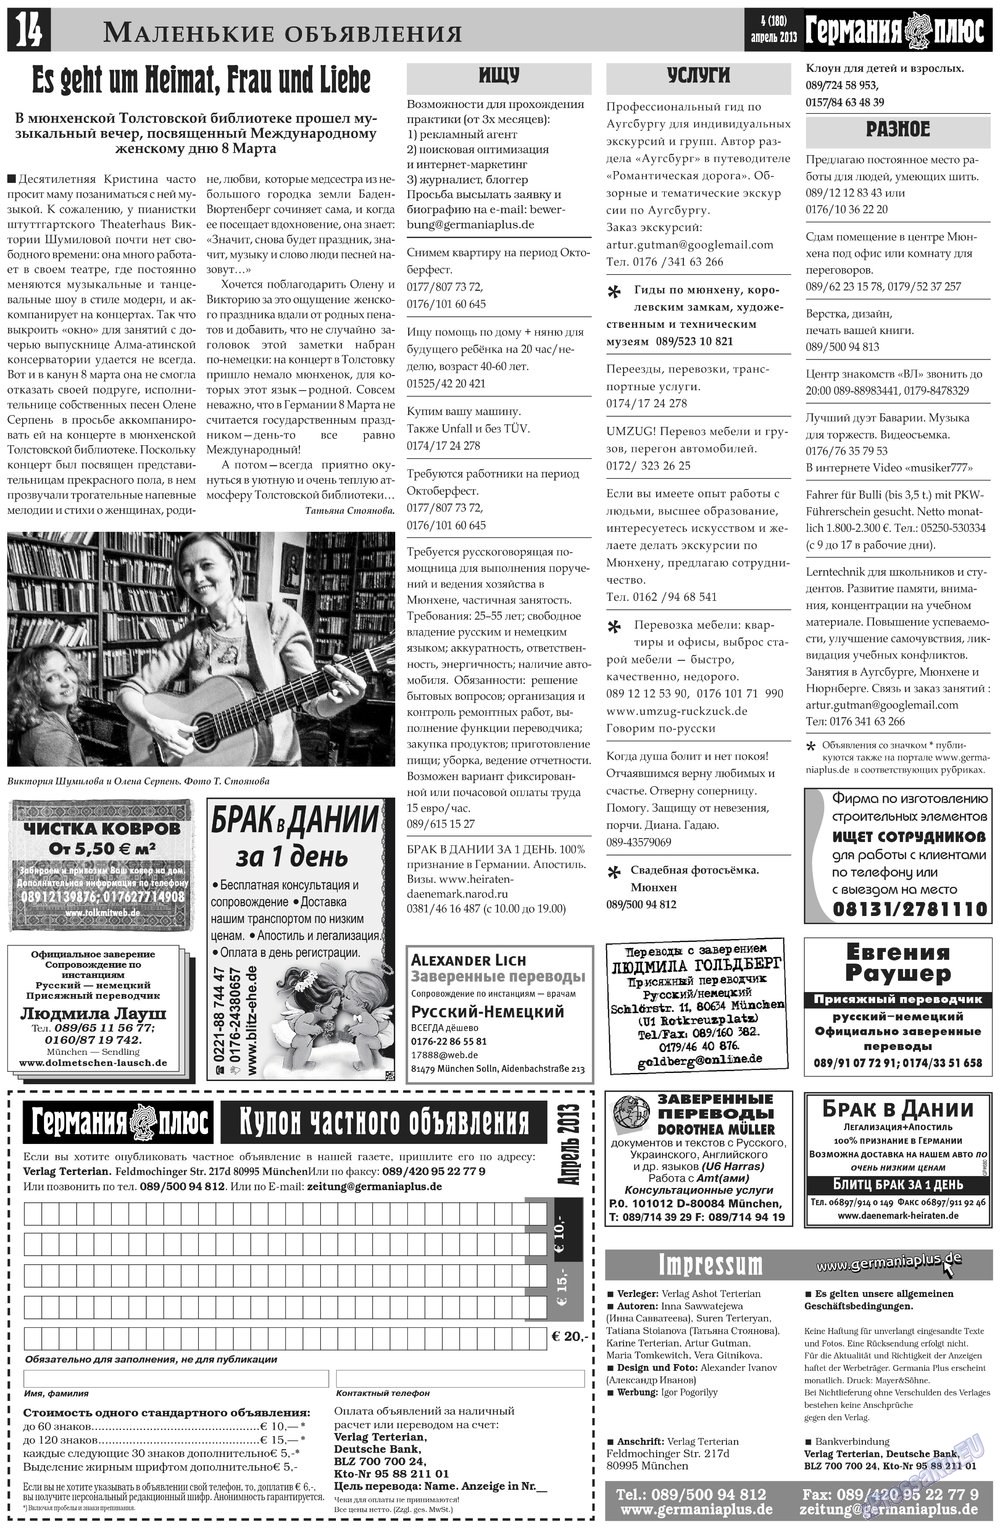 Германия плюс, газета. 2013 №4 стр.14